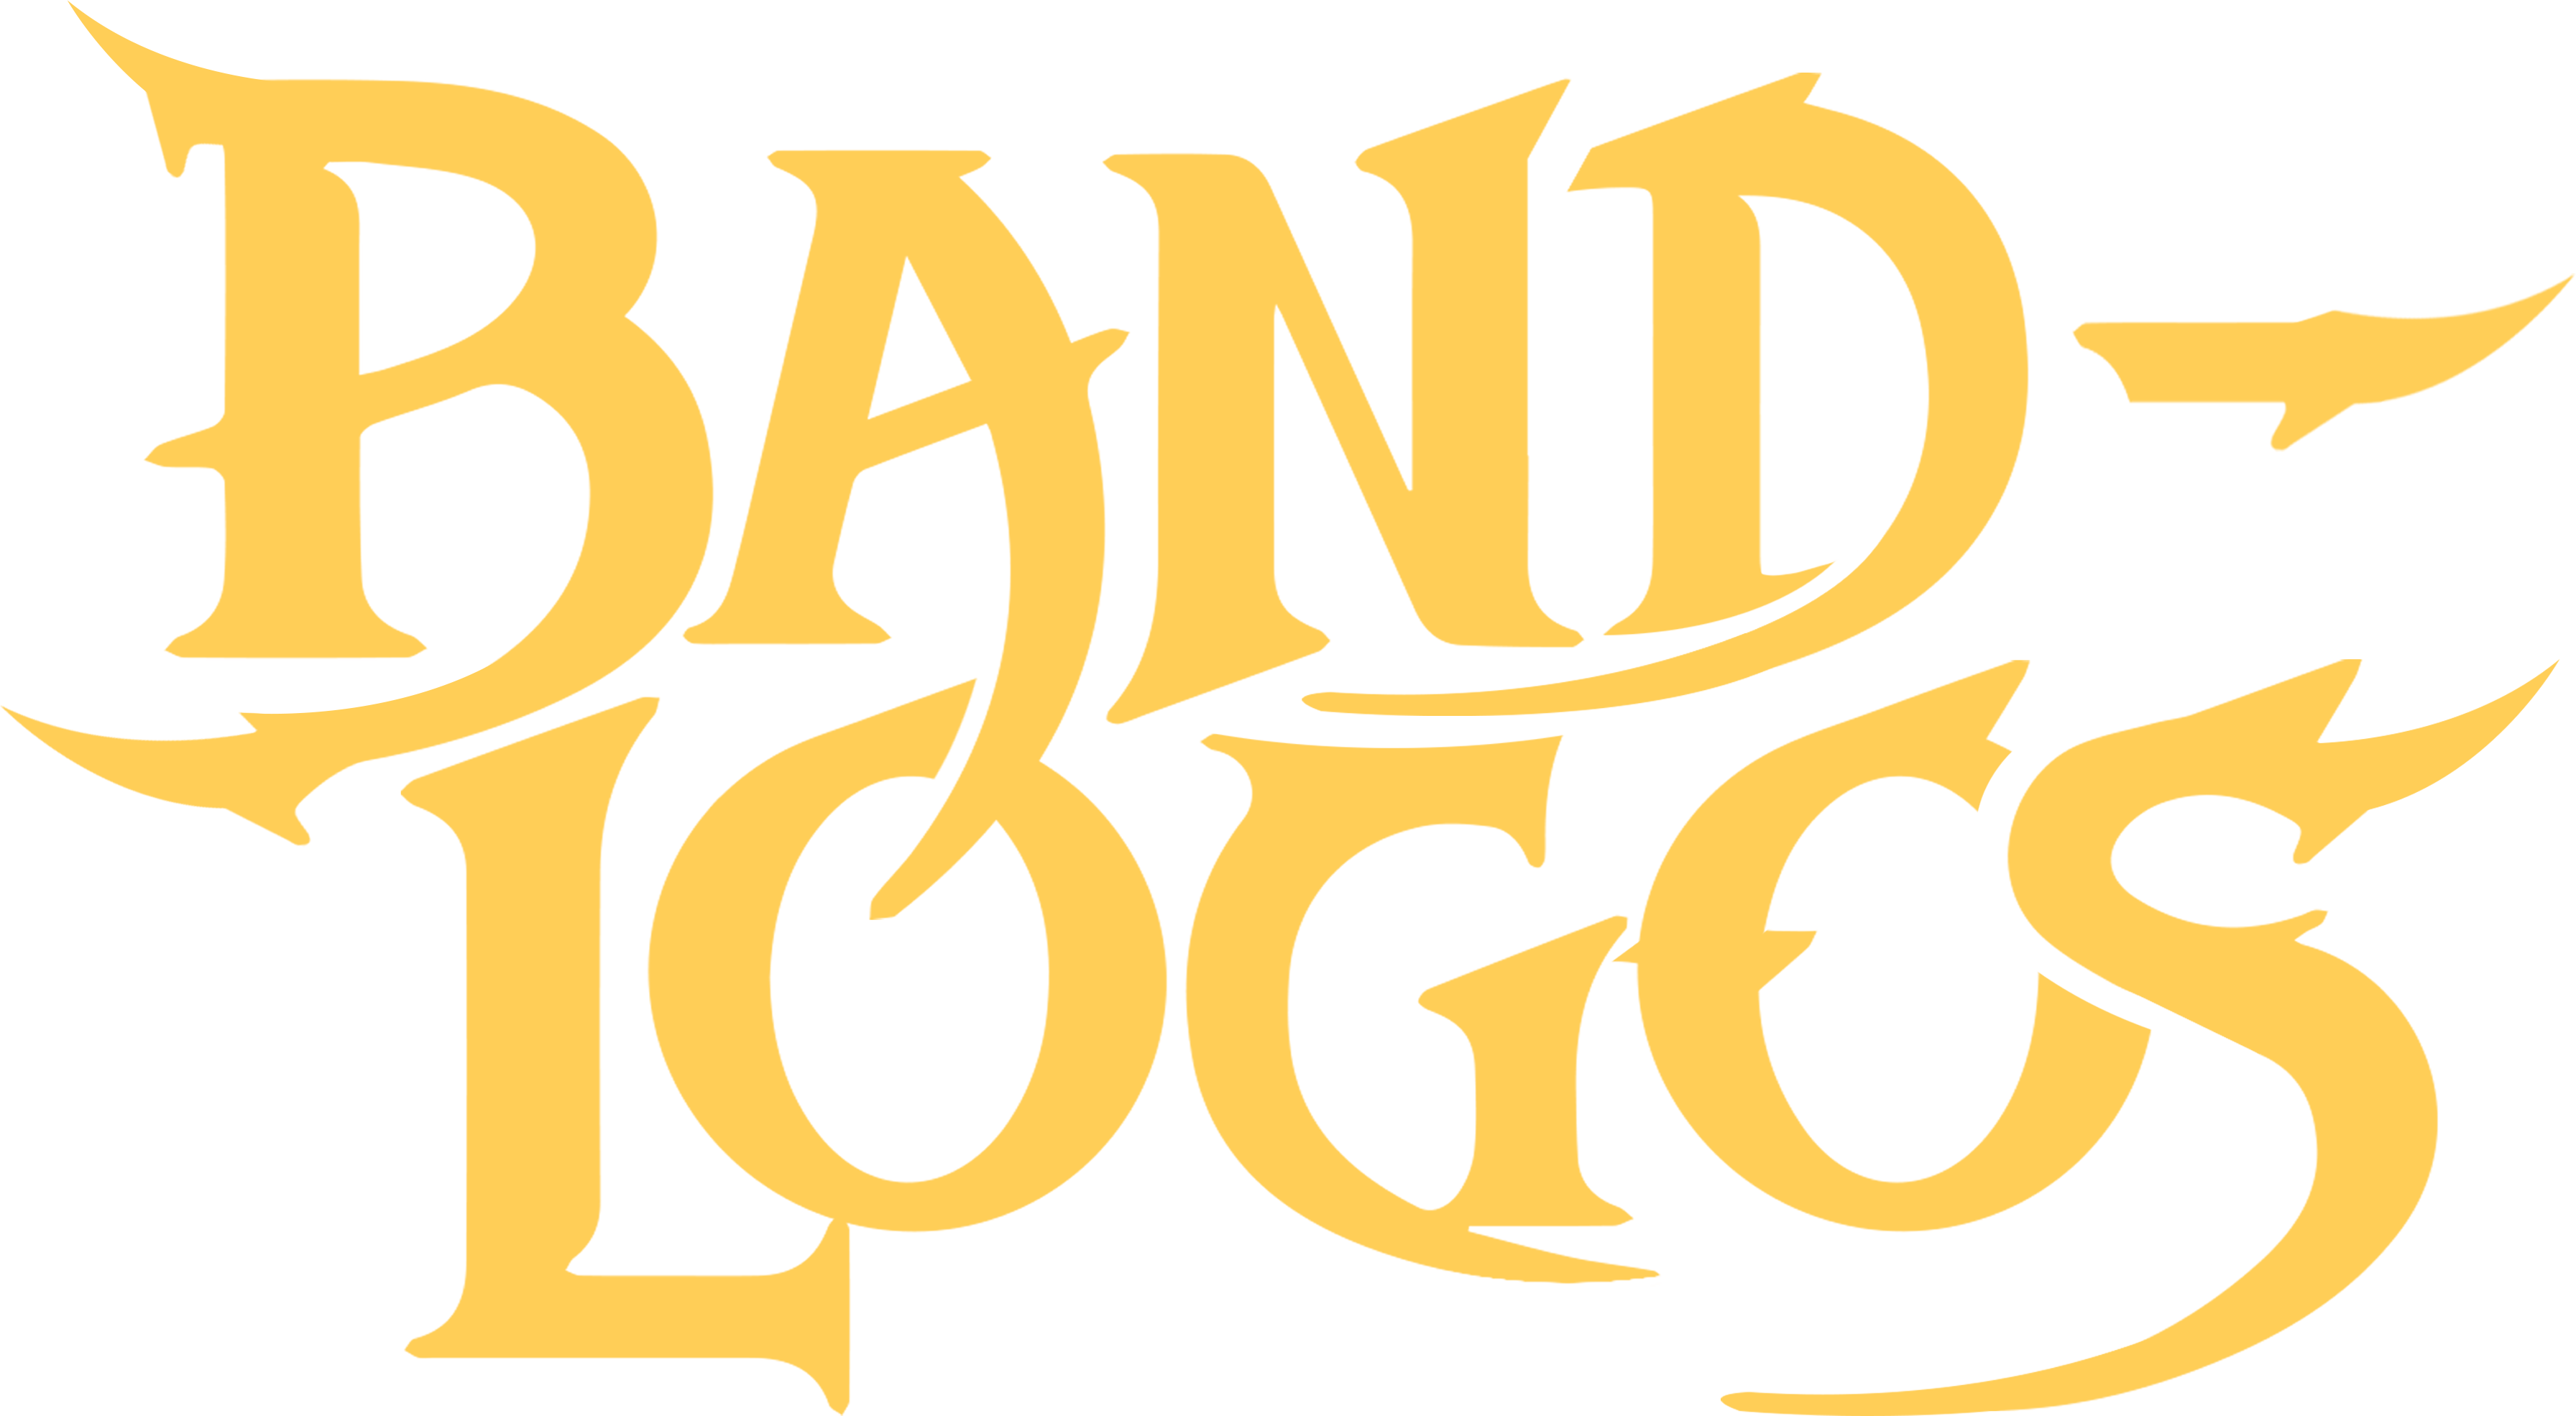 Logo of Band Logos